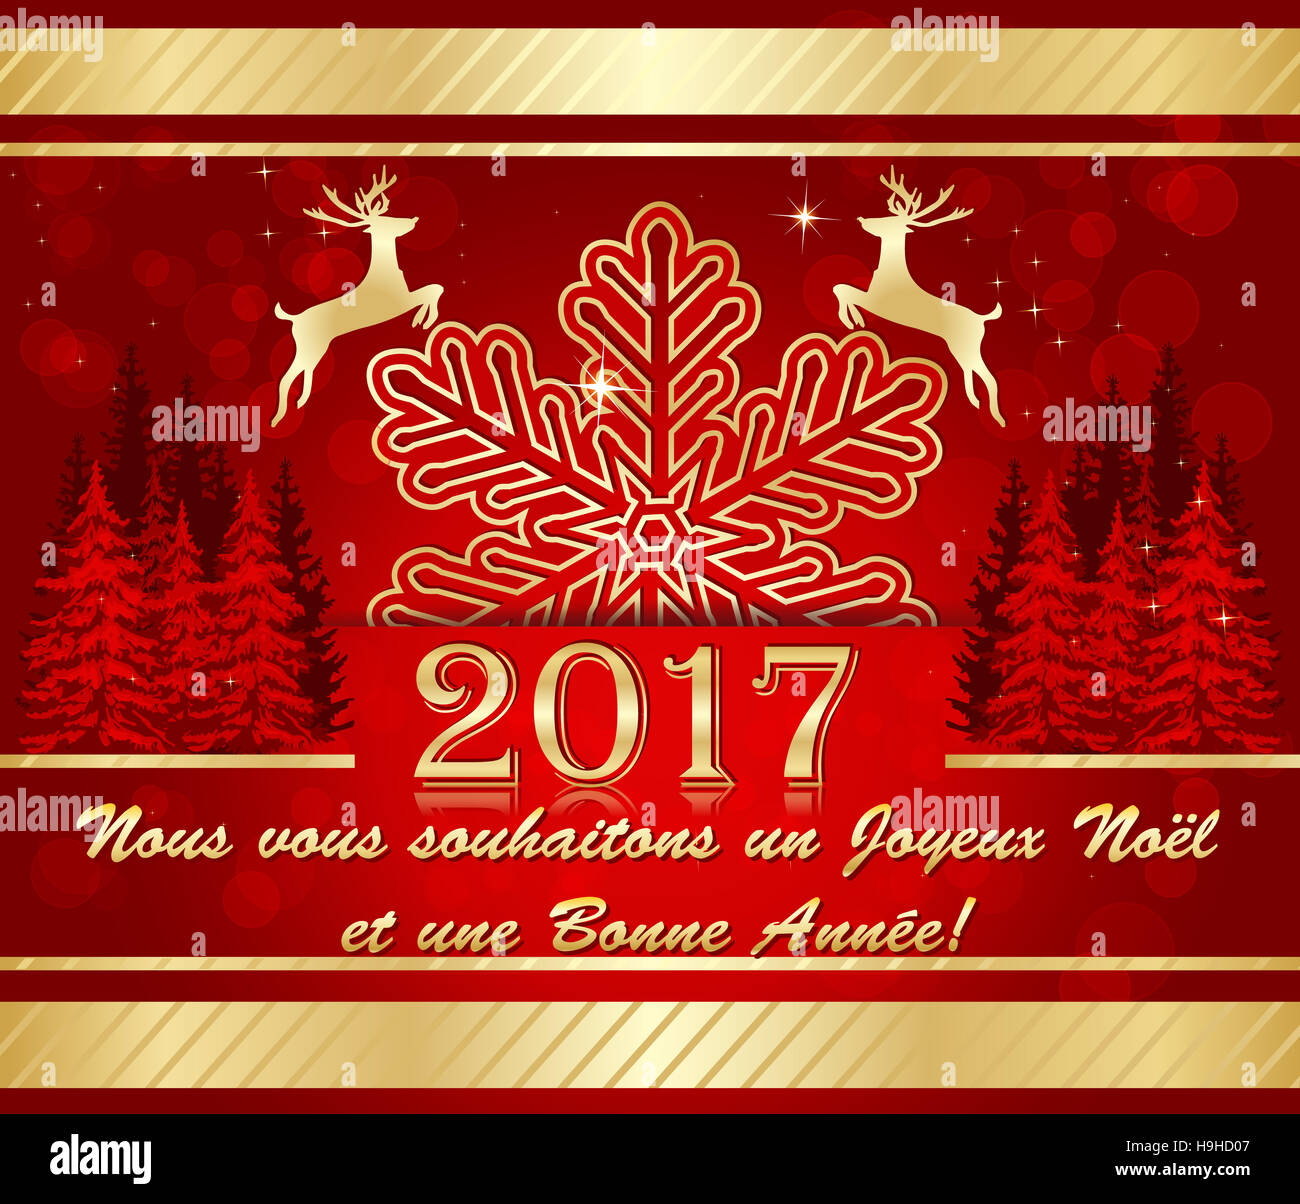 Carte de voeux d'entreprise pour célébrer l'arrivée de la nouvelle année:  Nous vous souhaitons un Joyeux Noël et une Bonne Année Stock Photo - Alamy